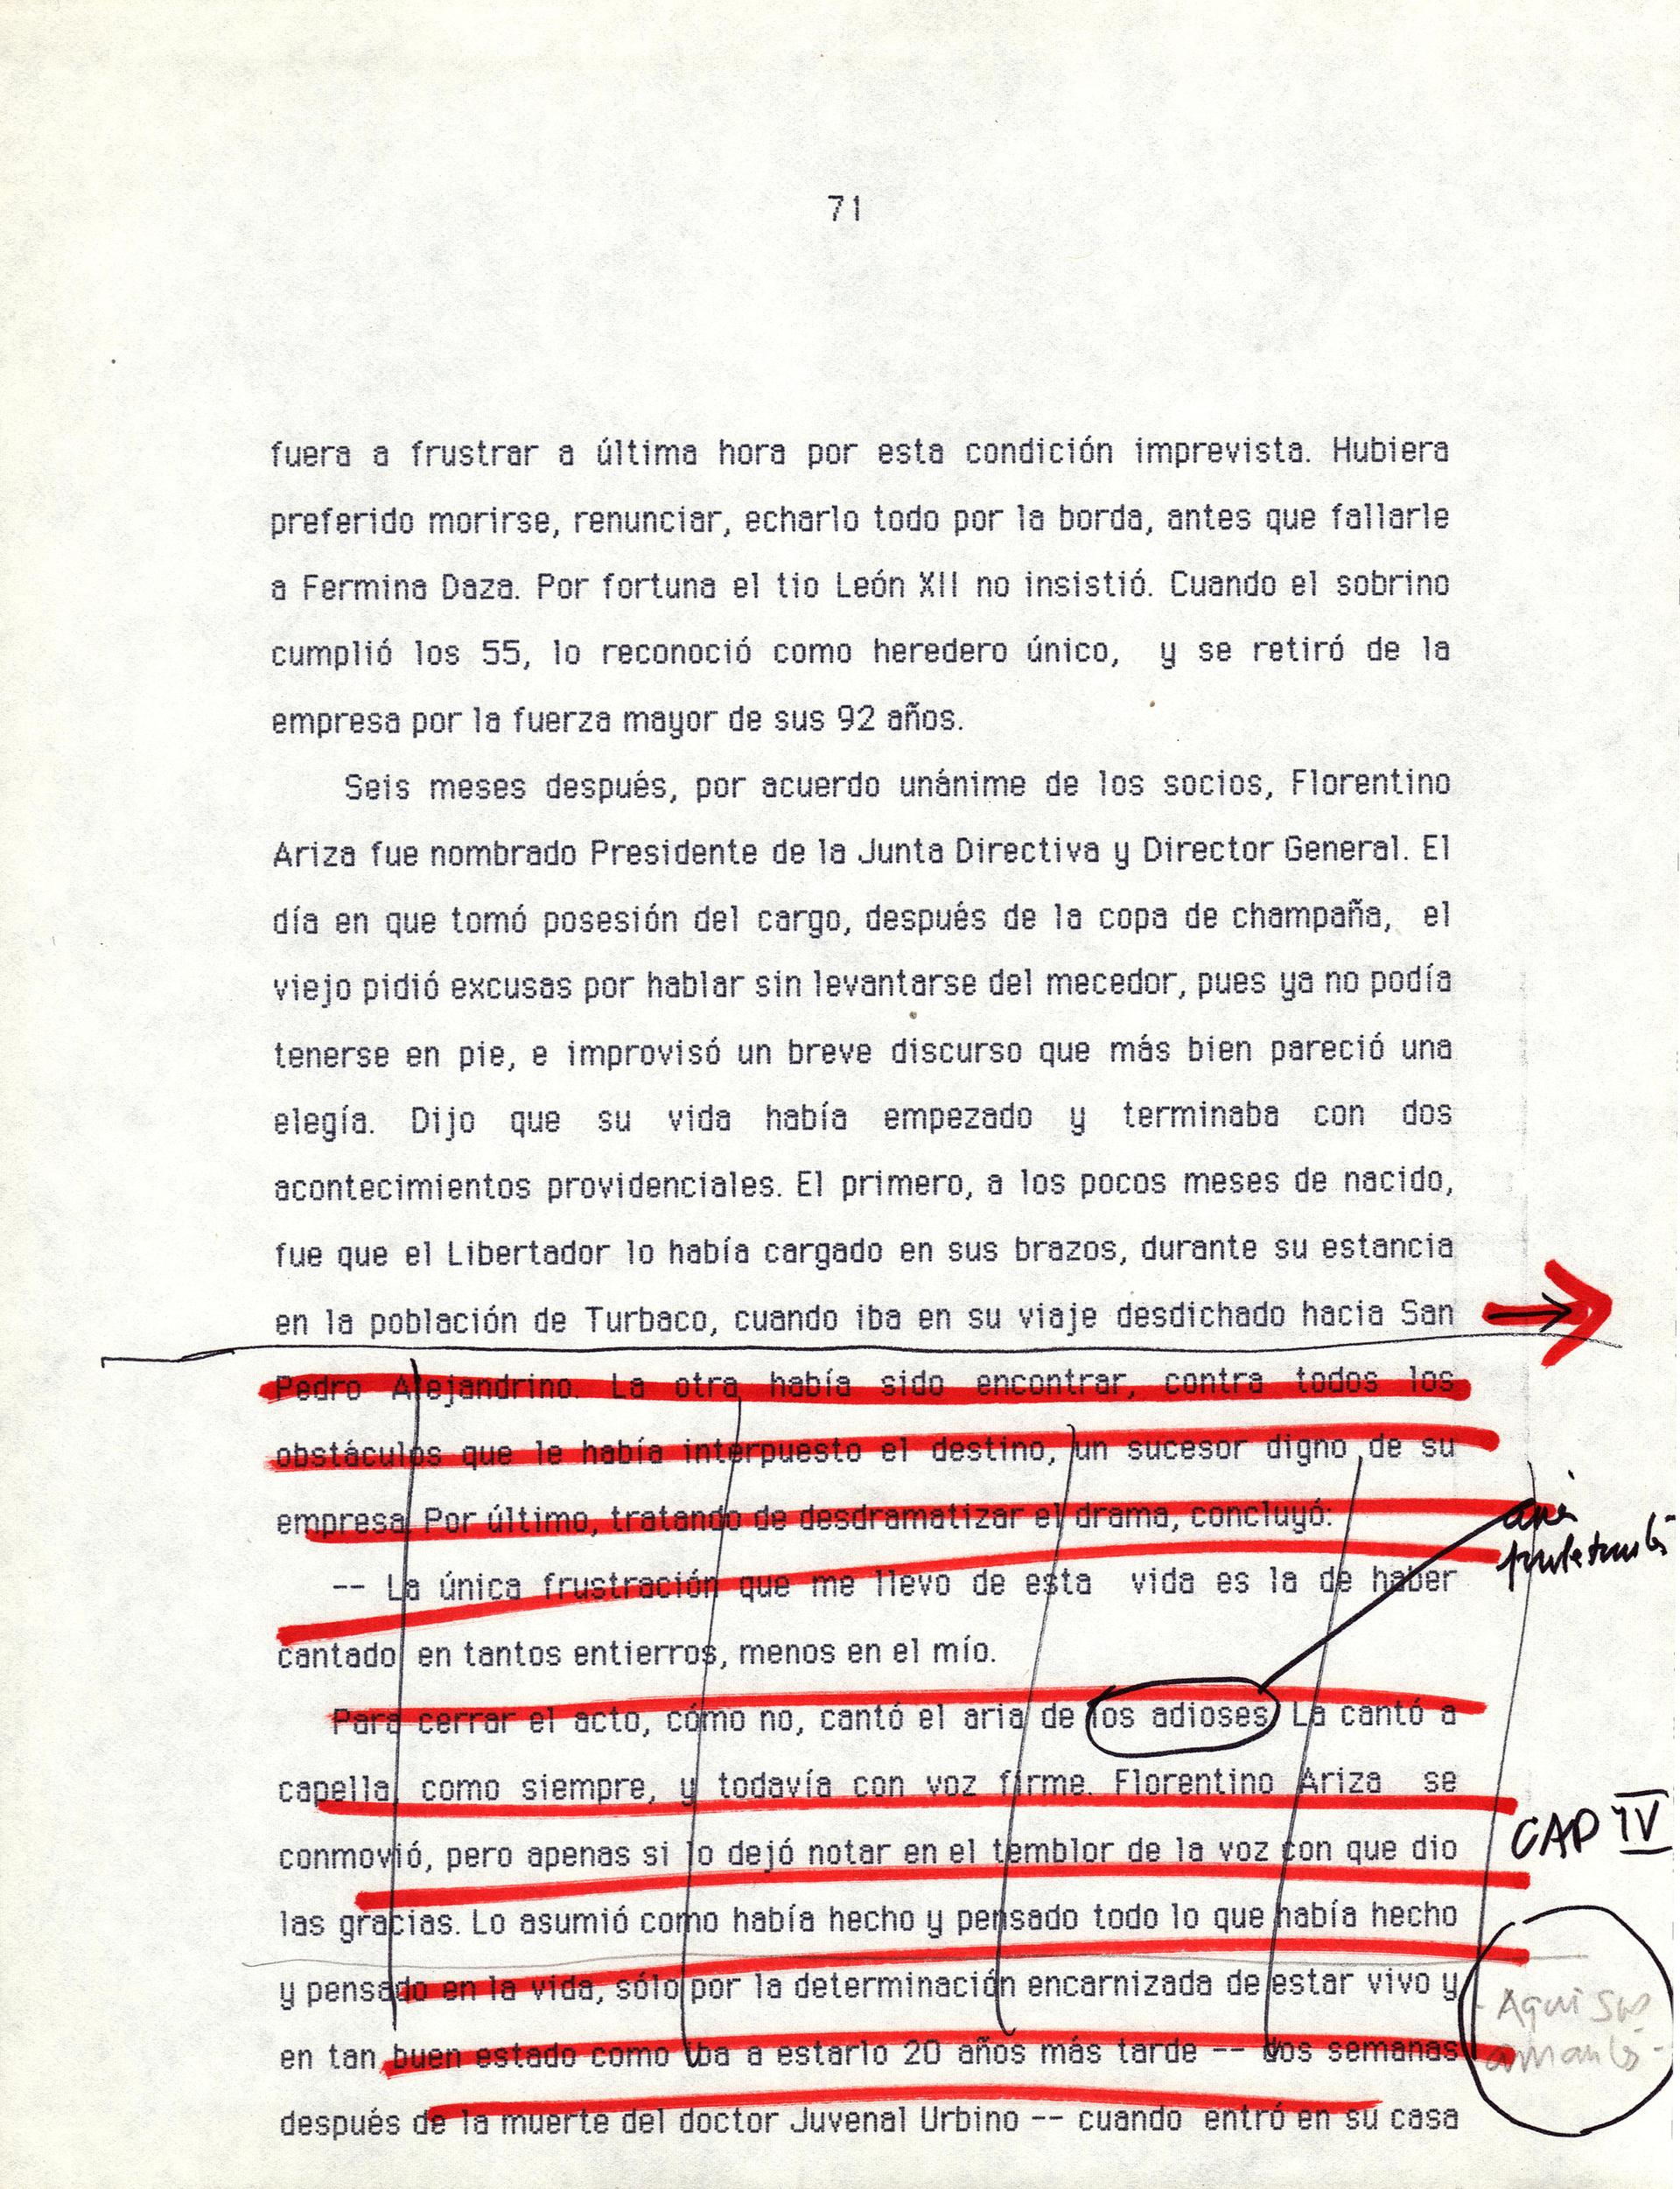 Typescript of Gabriel García Márquez's 